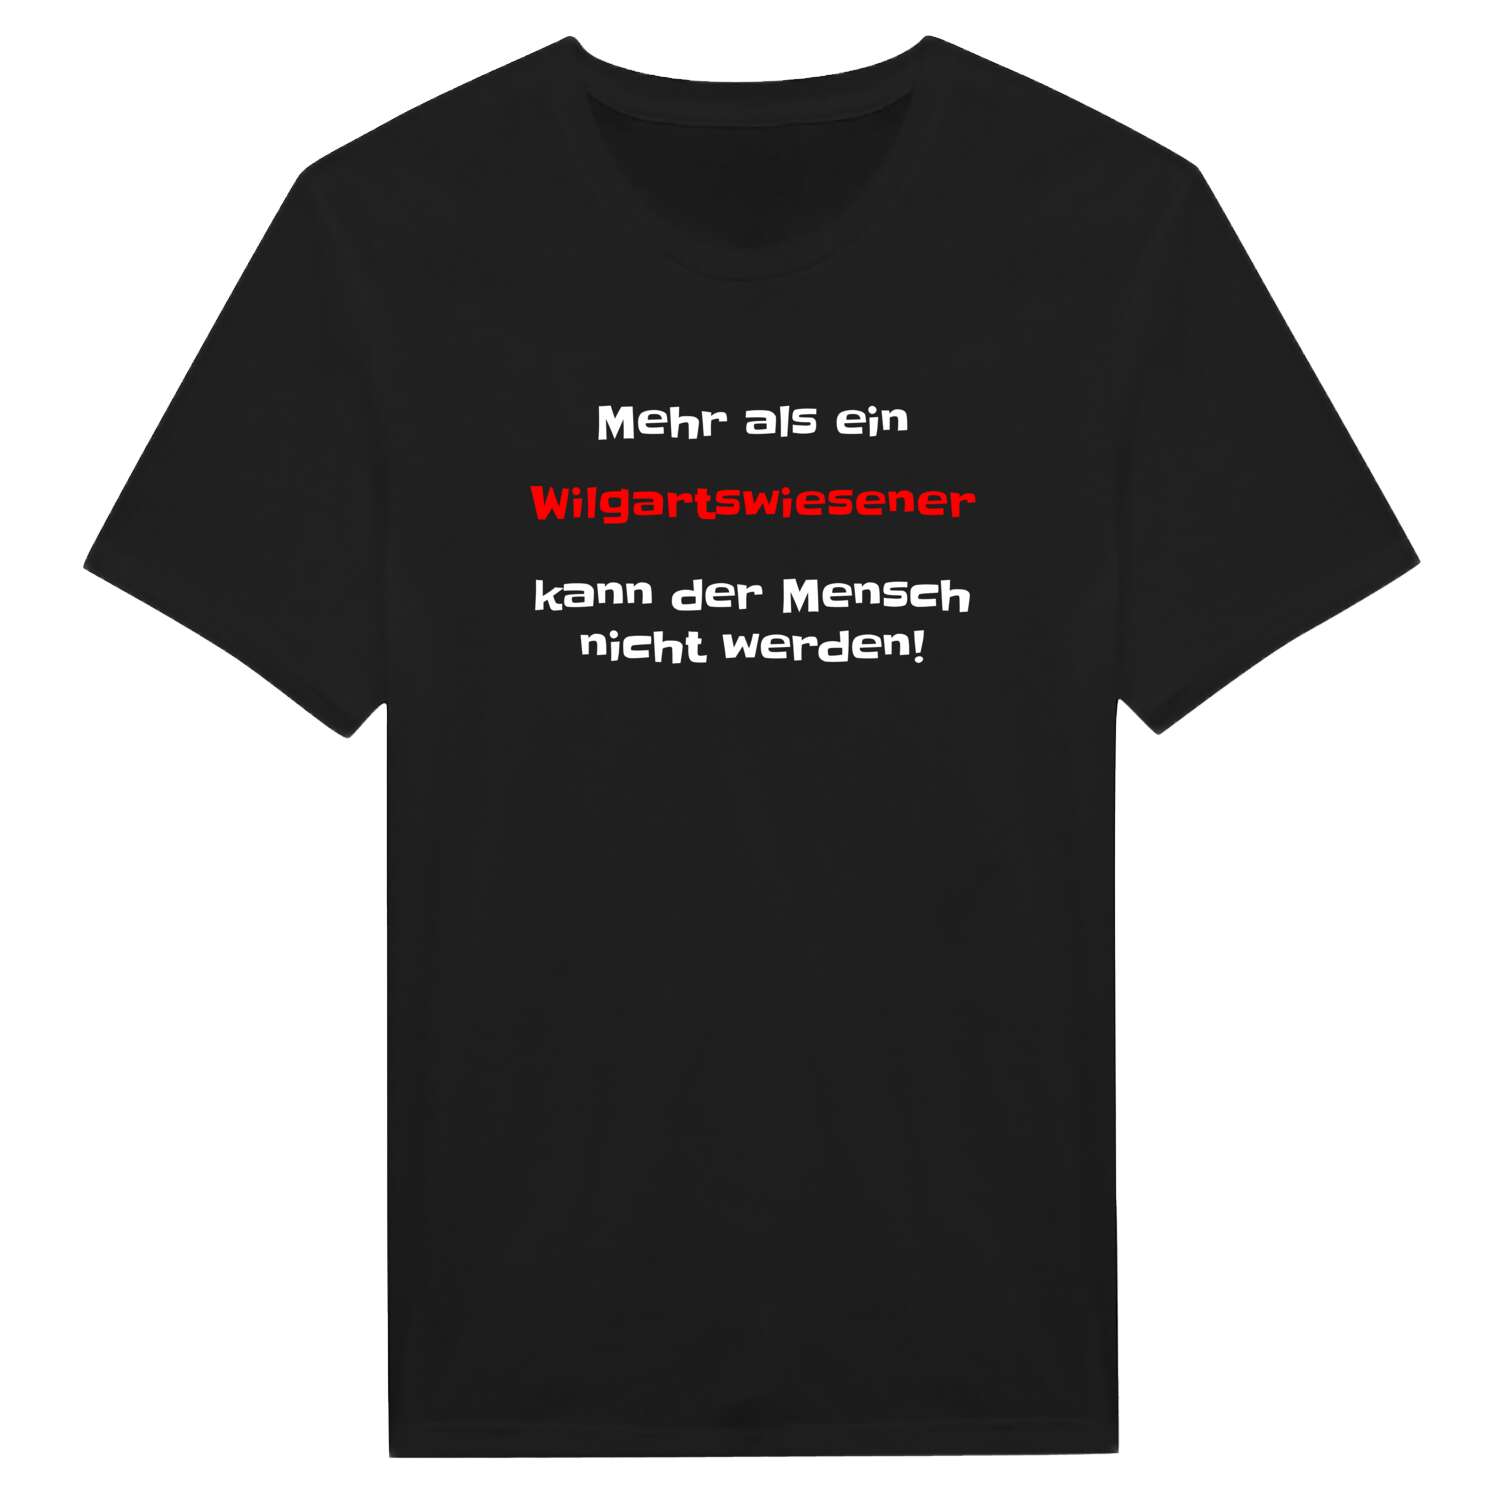 Wilgartswiesen T-Shirt »Mehr als ein«